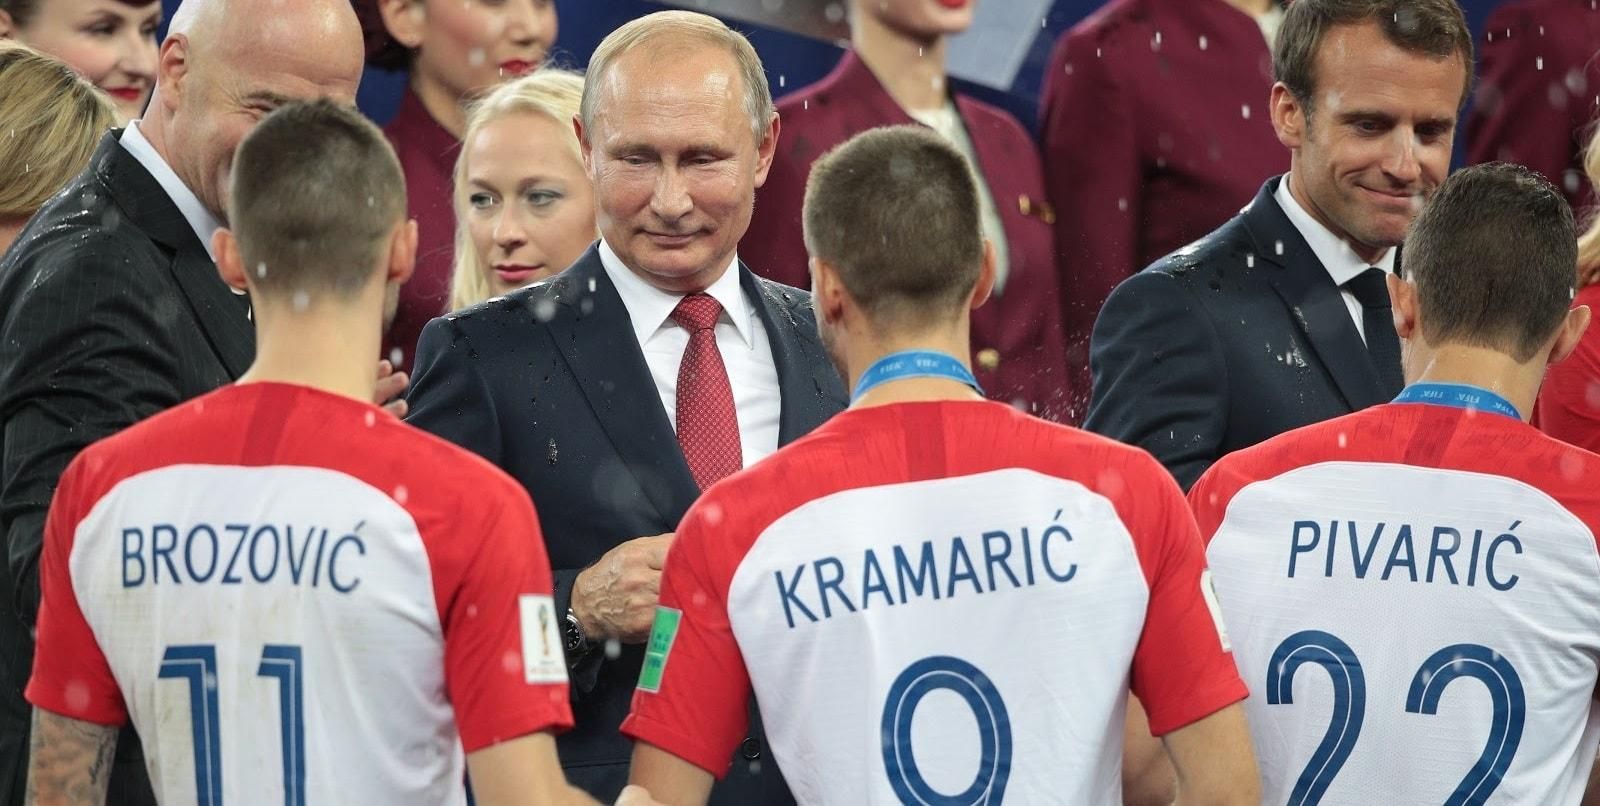 Футболист "Динамо" рассказал, почему не пожал руку Путину в финале ЧМ-2018